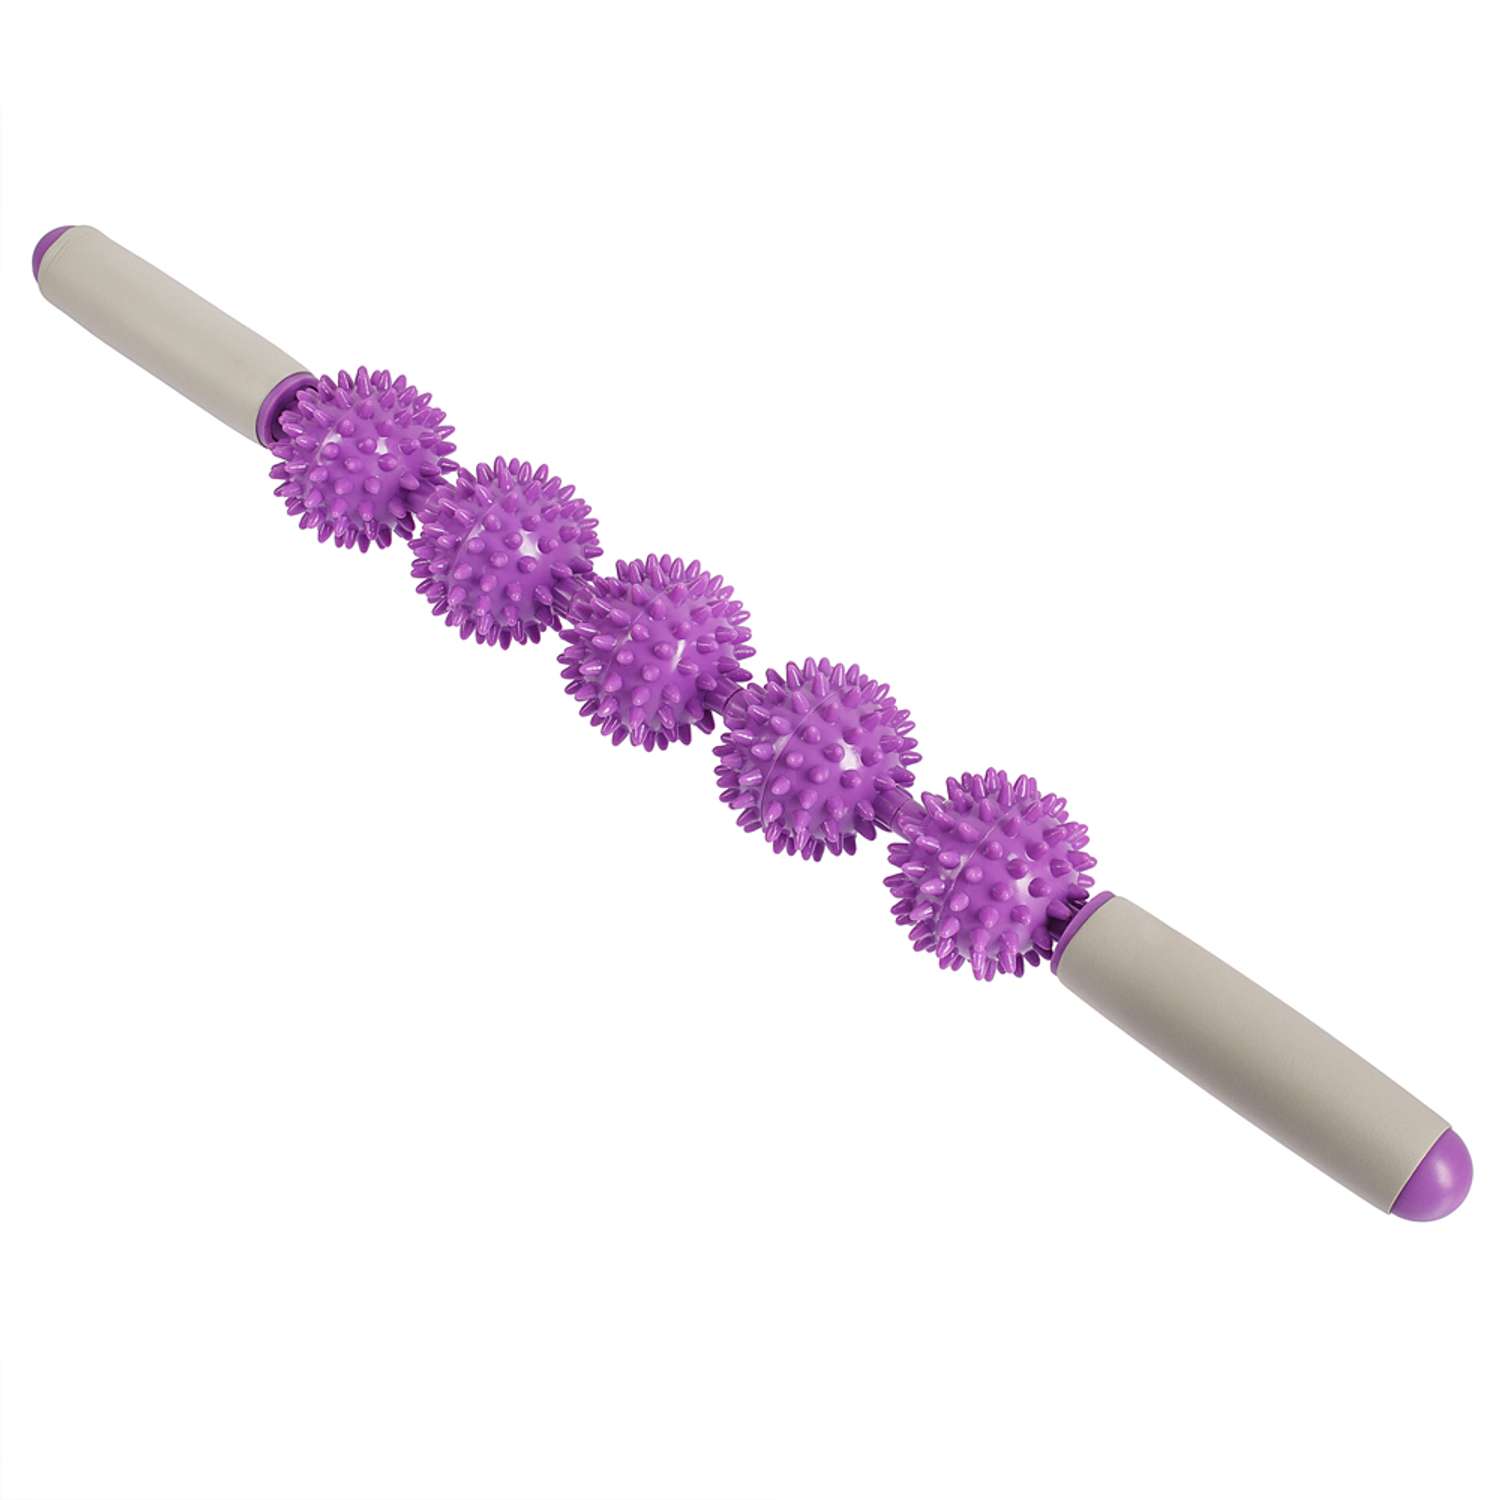 Массажёр ручной механический STRONG BODY МФР 5 массажных мячей на палке фиолетовый - фото 2